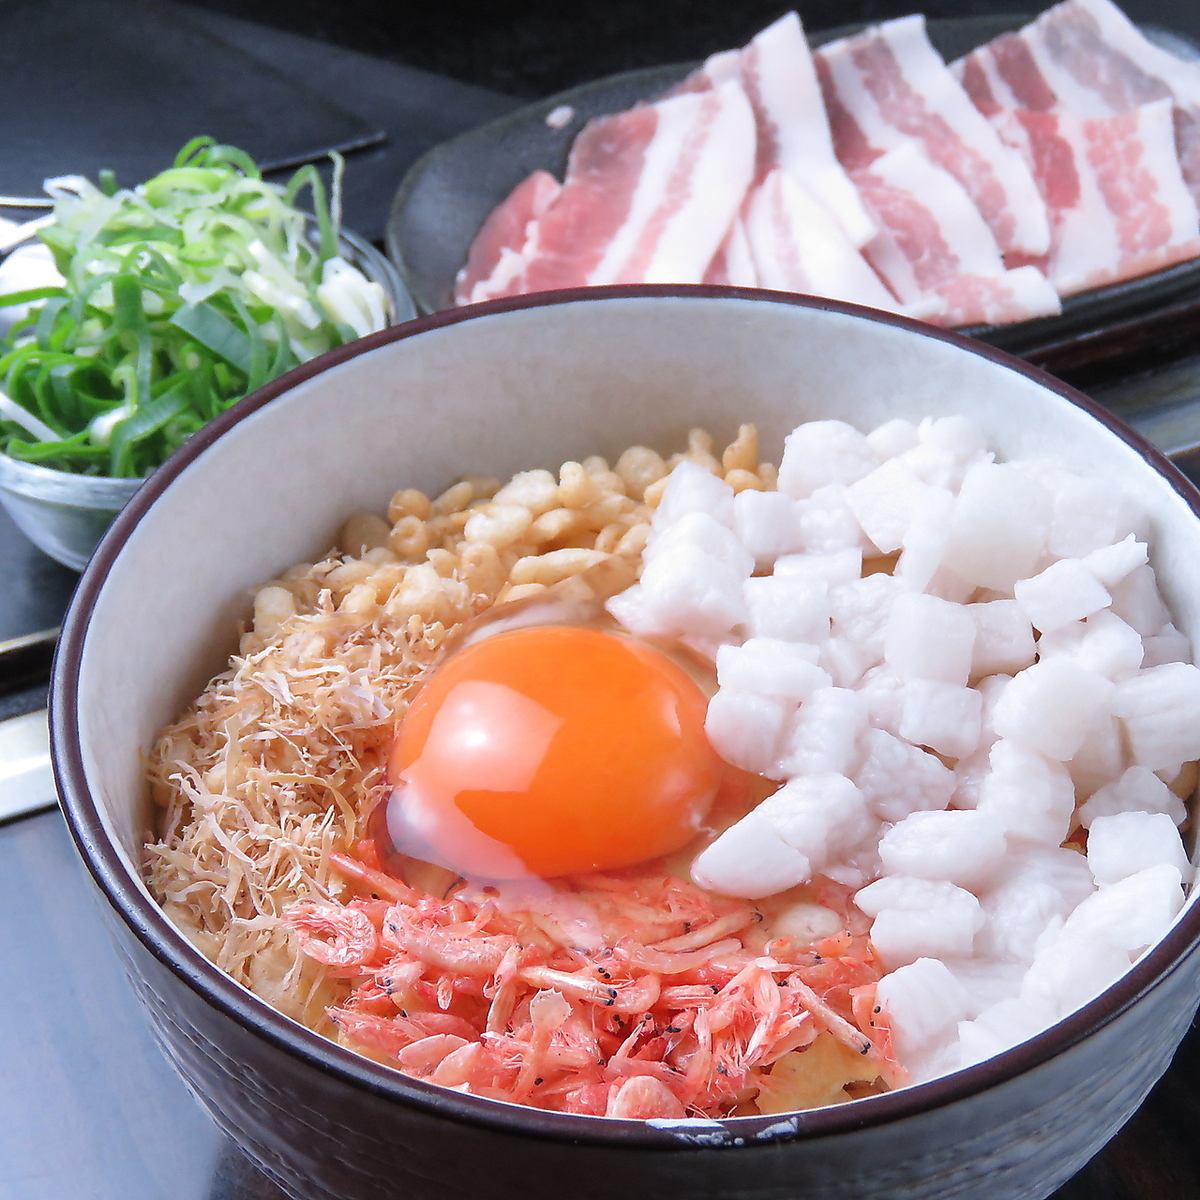 我們推薦的okonomiyaki [豬肉丁山藥]和[焗] 1078日元〜